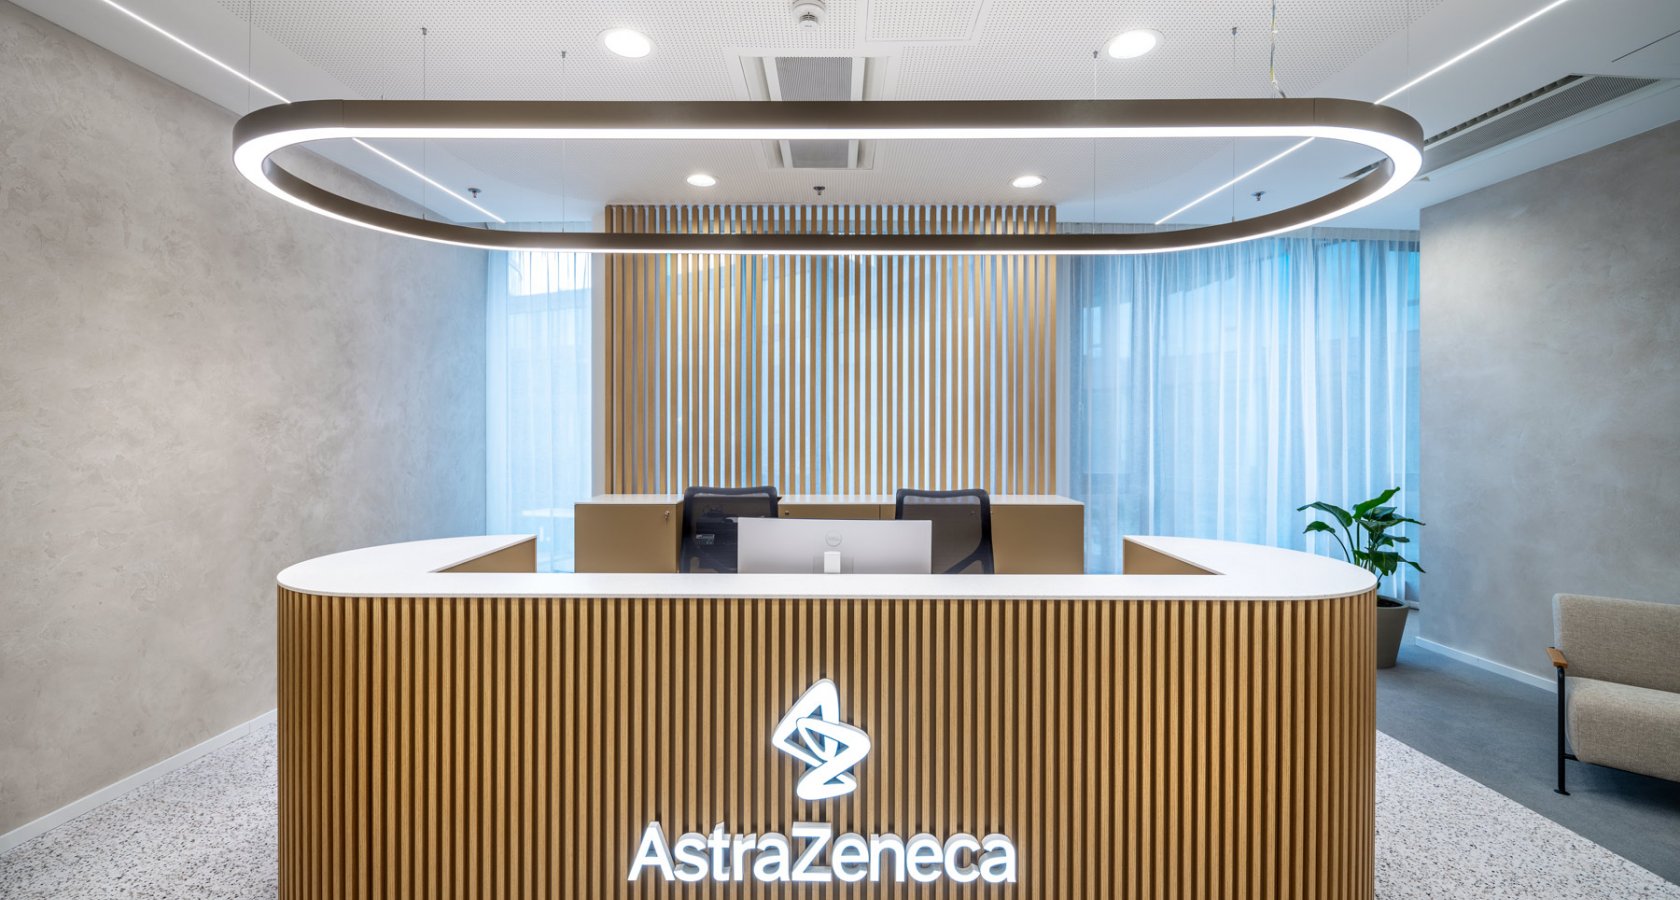 AstraZeneca -  sídlo společnosti